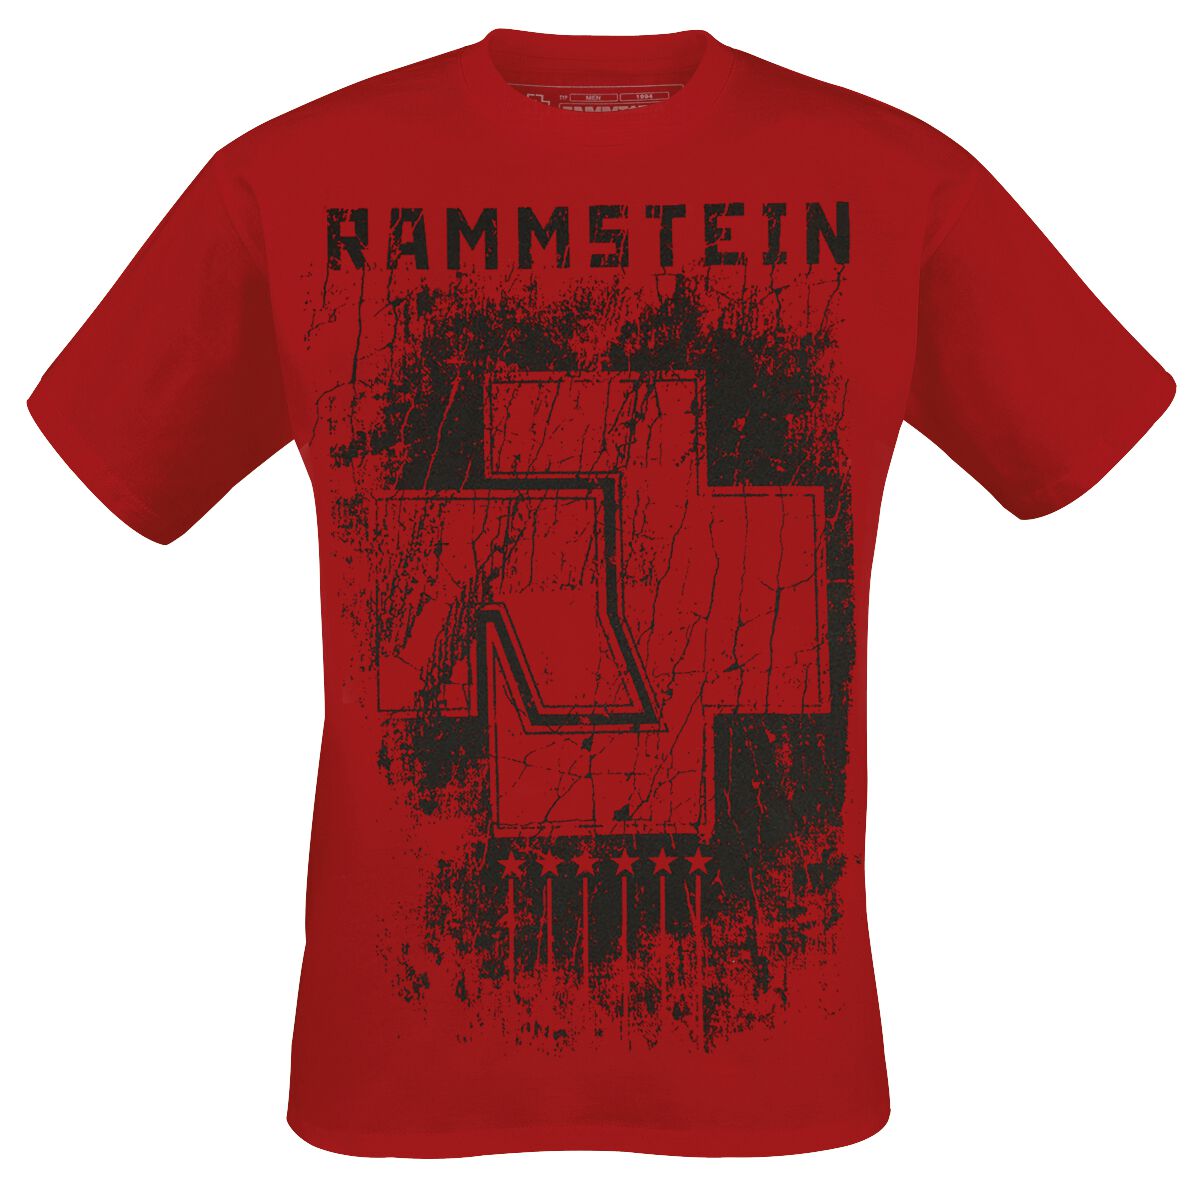 Rammstein T-Shirt - 6 Herzen - S bis XXL - für Männer - Größe M - rot  - Lizenziertes Merchandise!